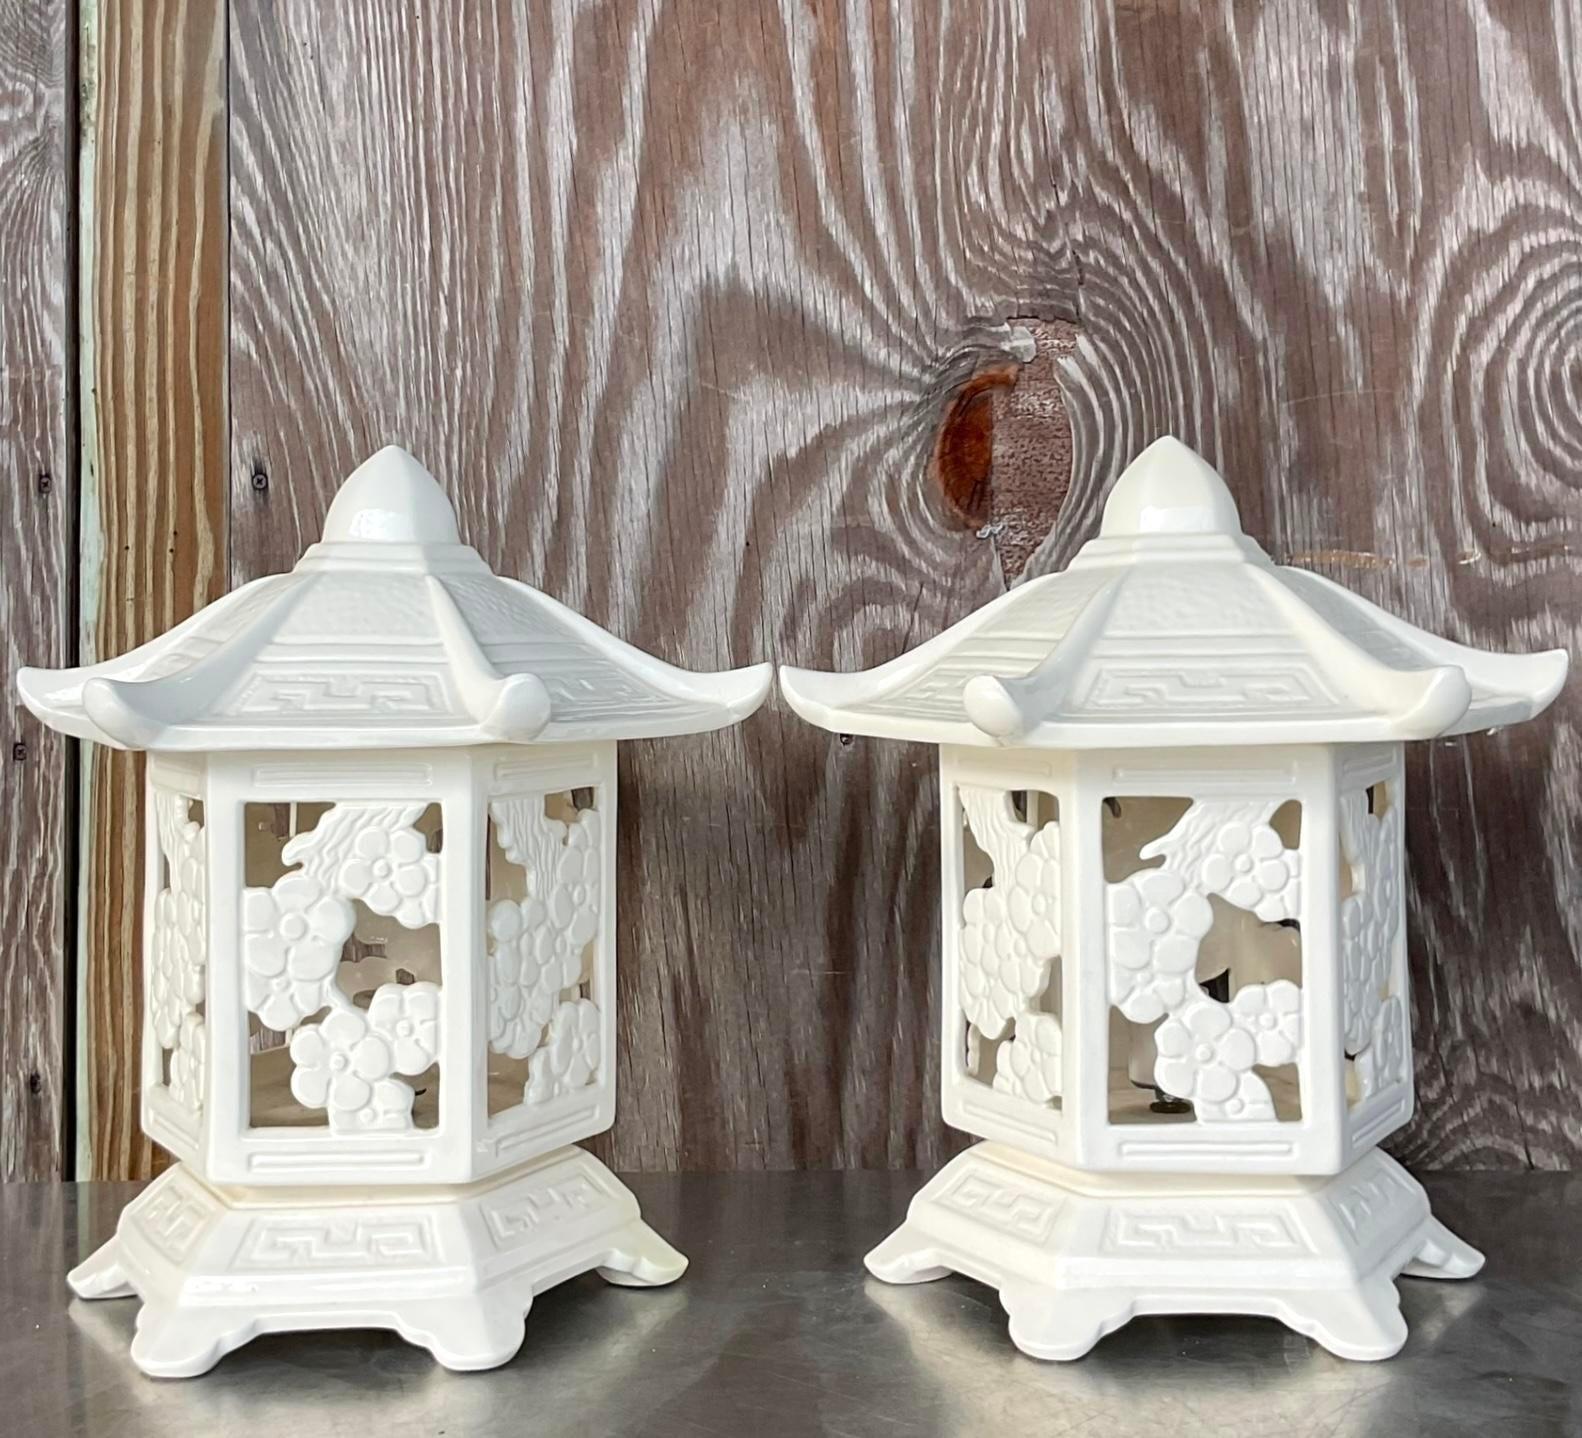 Illuminez votre intérieur avec l'élégance intemporelle de nos lampes-lanternes pagodes Vintage Regency en céramique émaillée - une paire. Inspirées du style Regency américain classique, ces lampes exquises exsudent la sophistication avec leur